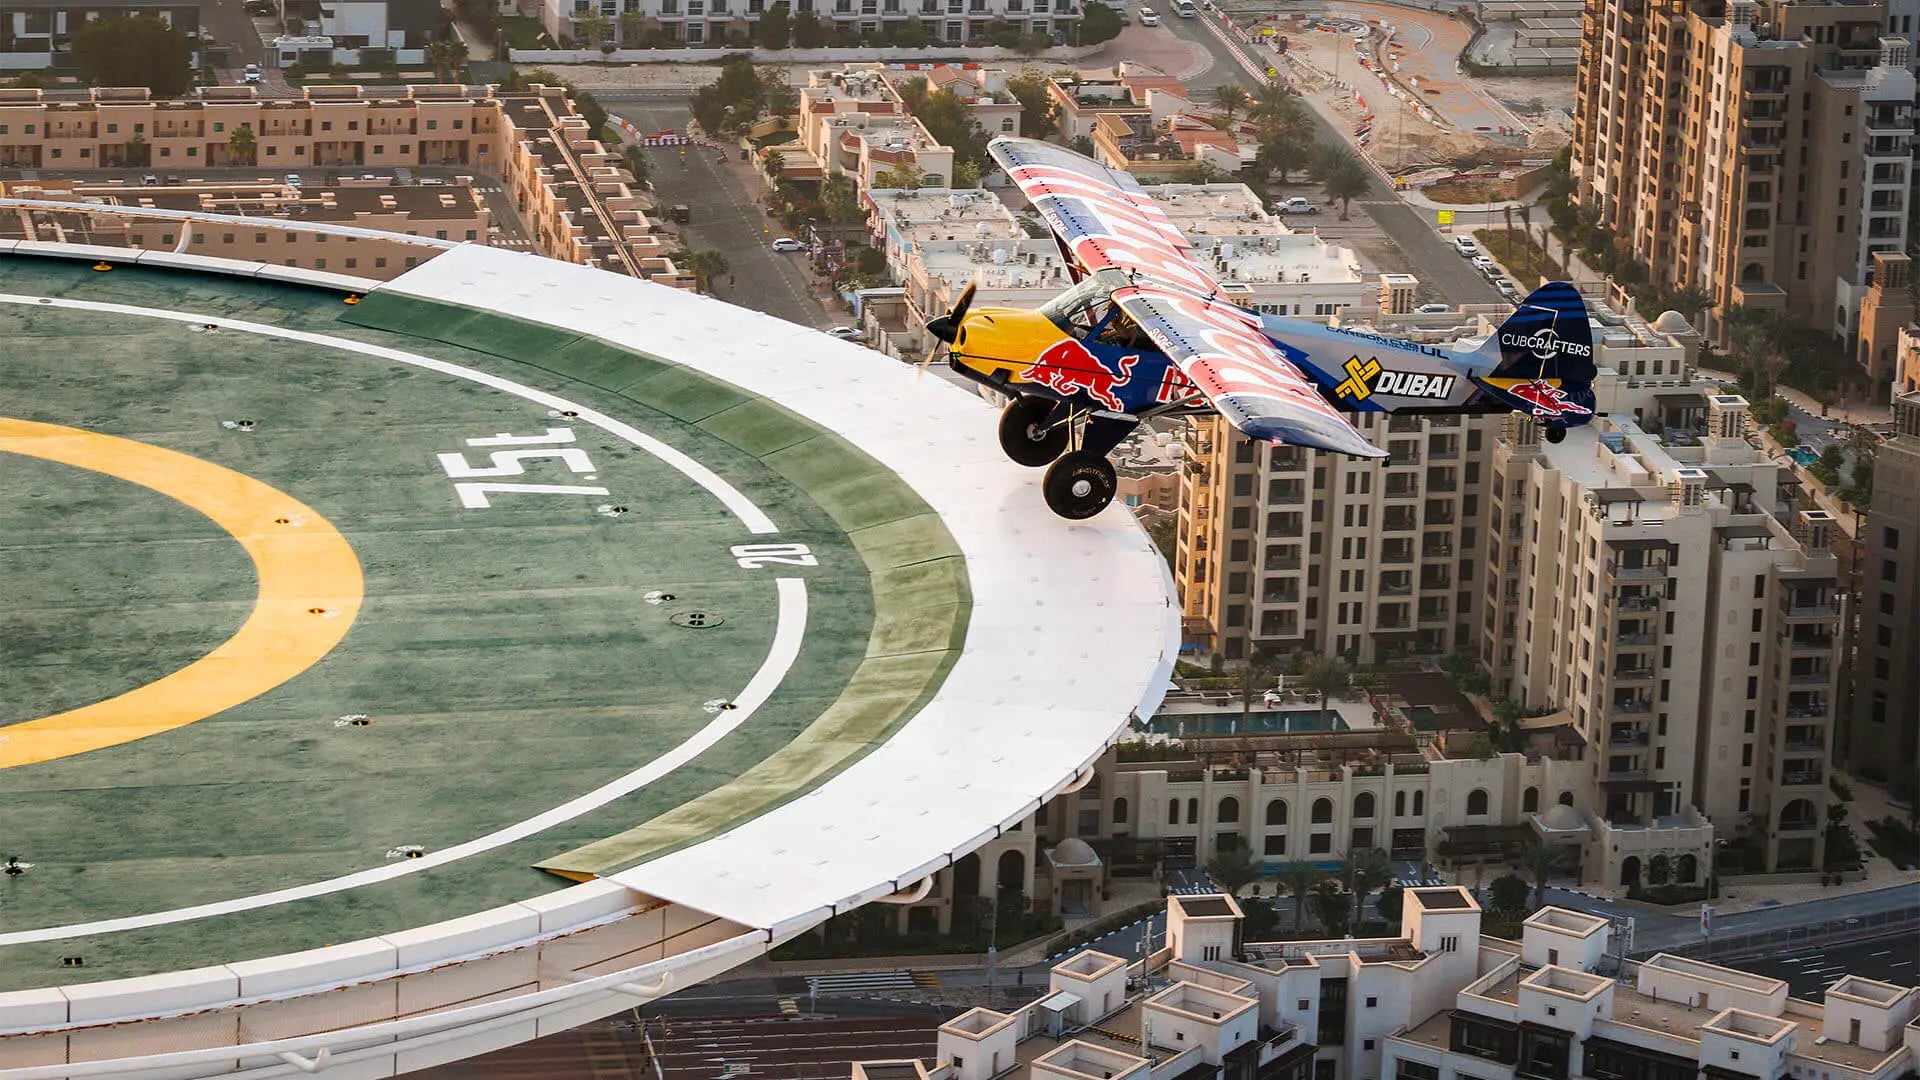 Red Bull a Jumeirah. Jak malé extremně výkonné letadlo přistálo na střeše hotelu